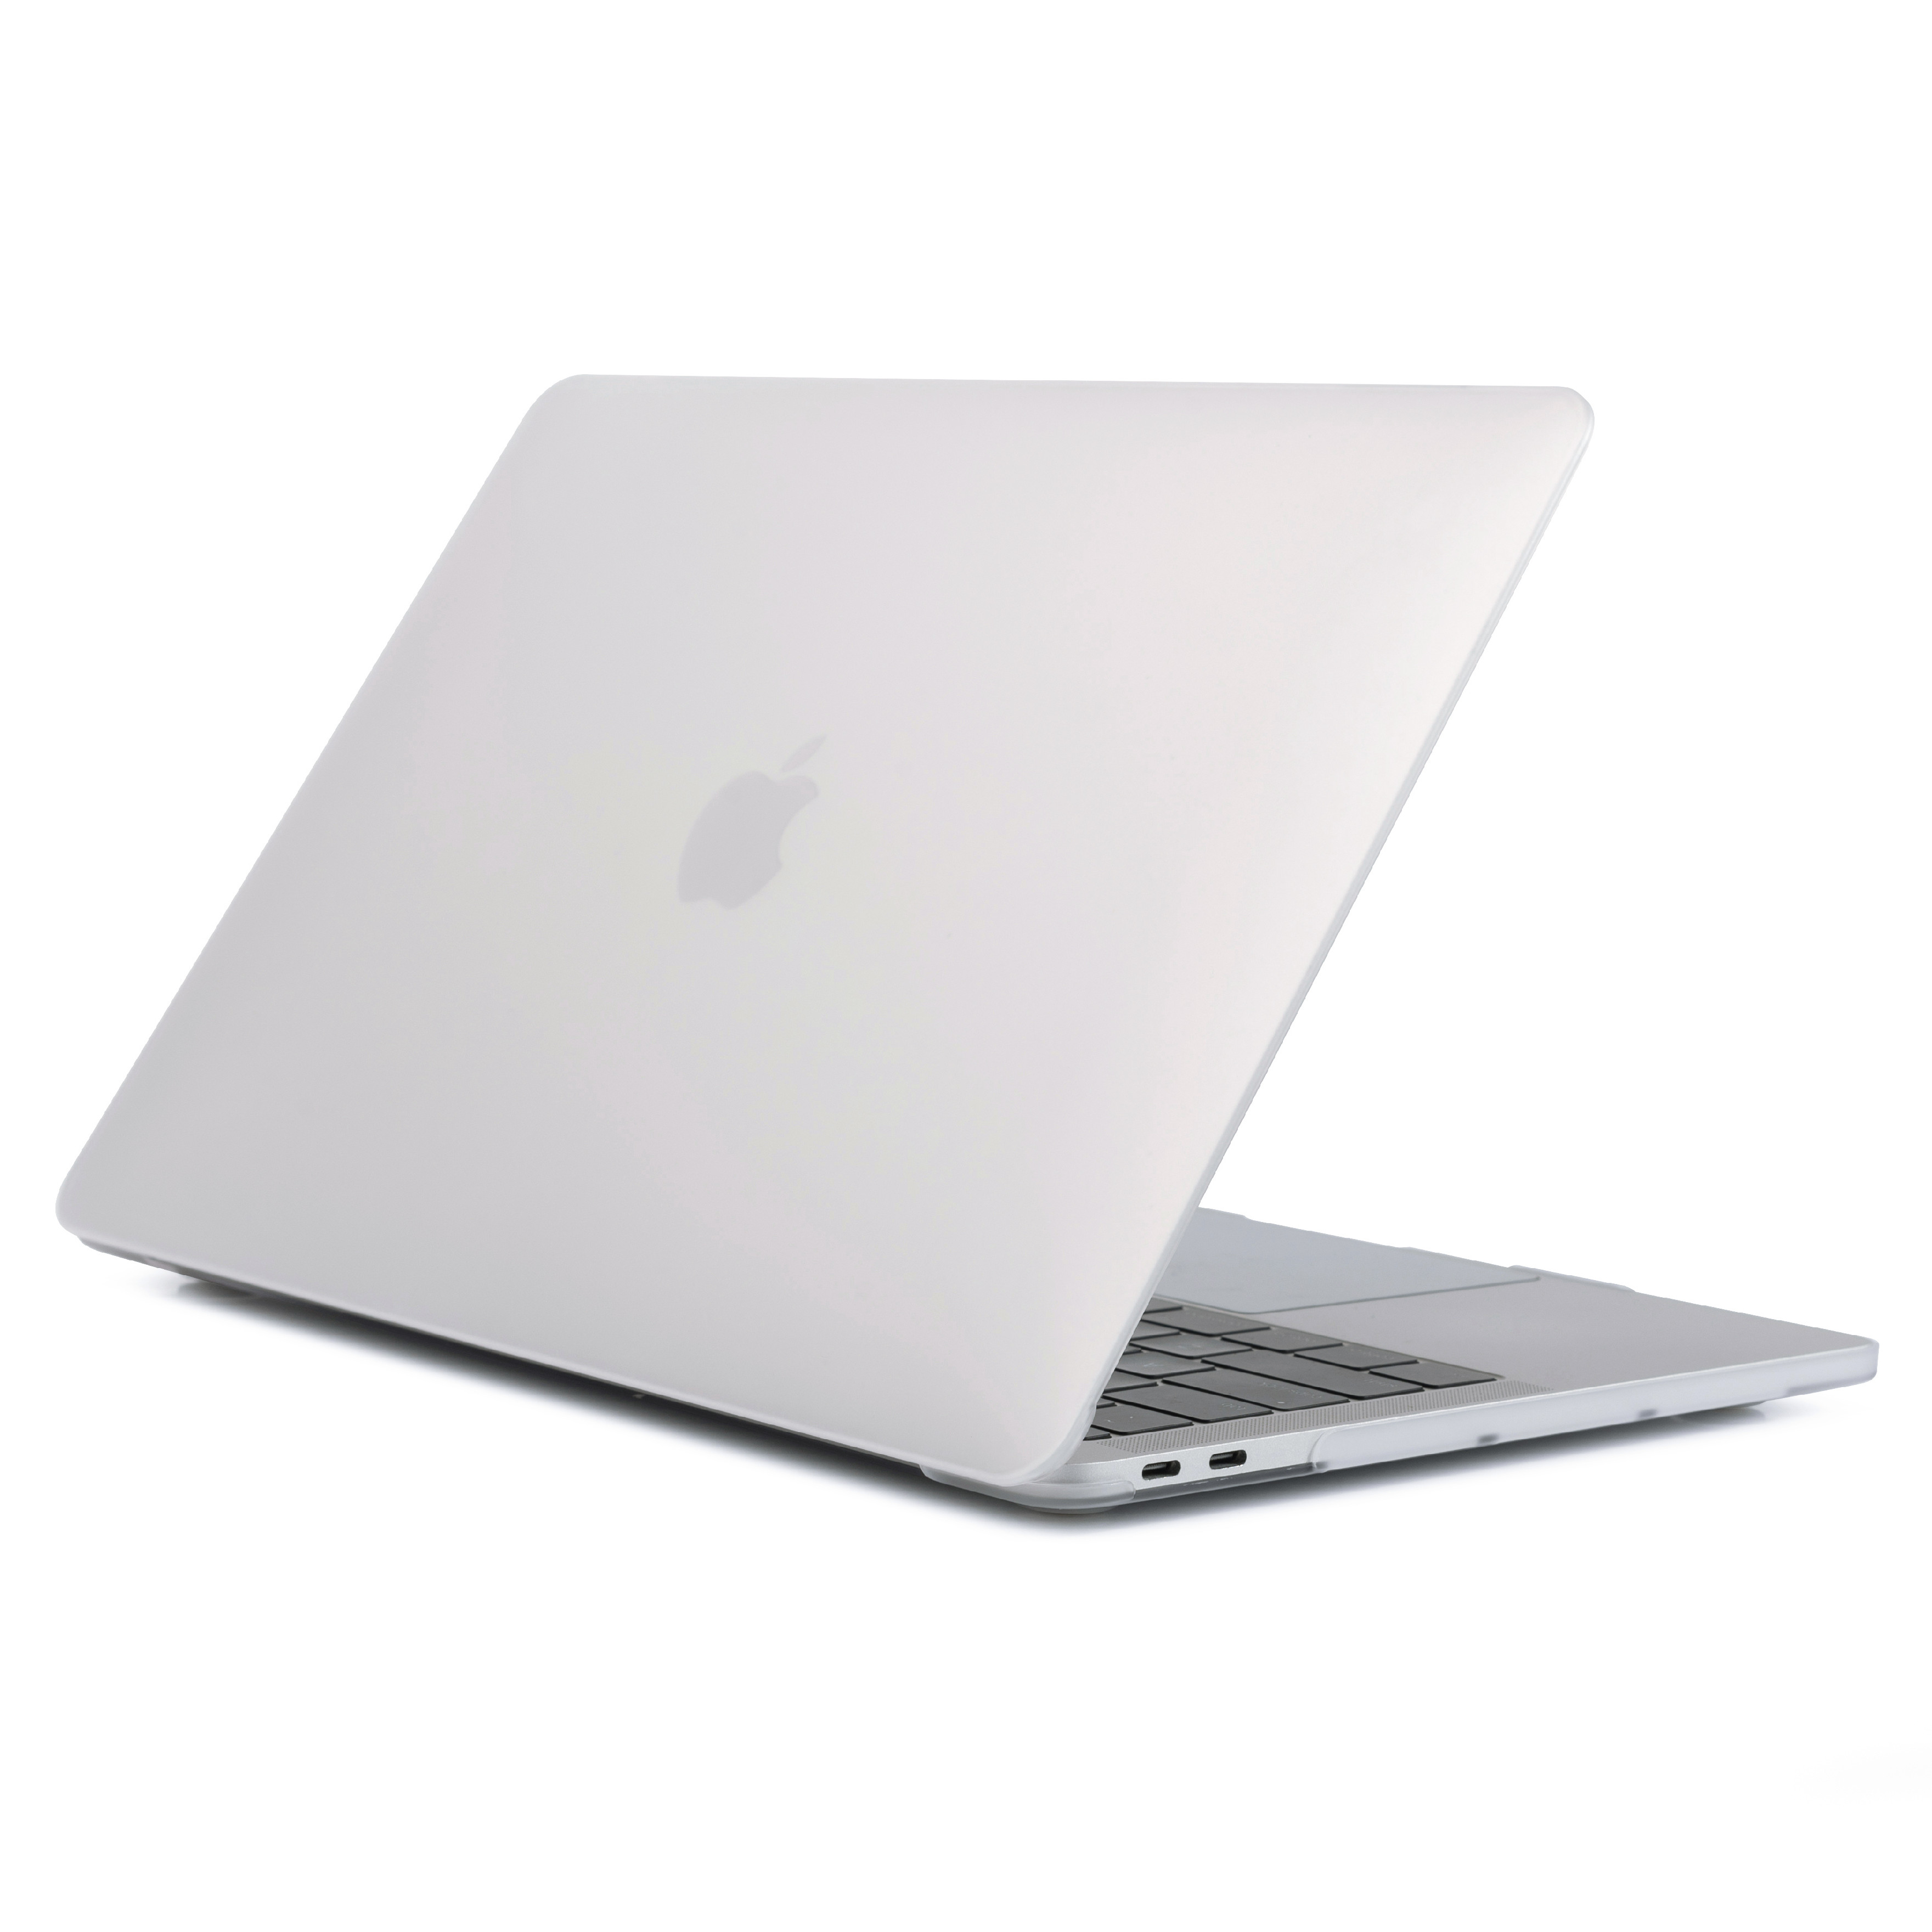 iPouzdro.cz pro MacBook Pro 15 (2012-2015) 2222221001538 transparentní